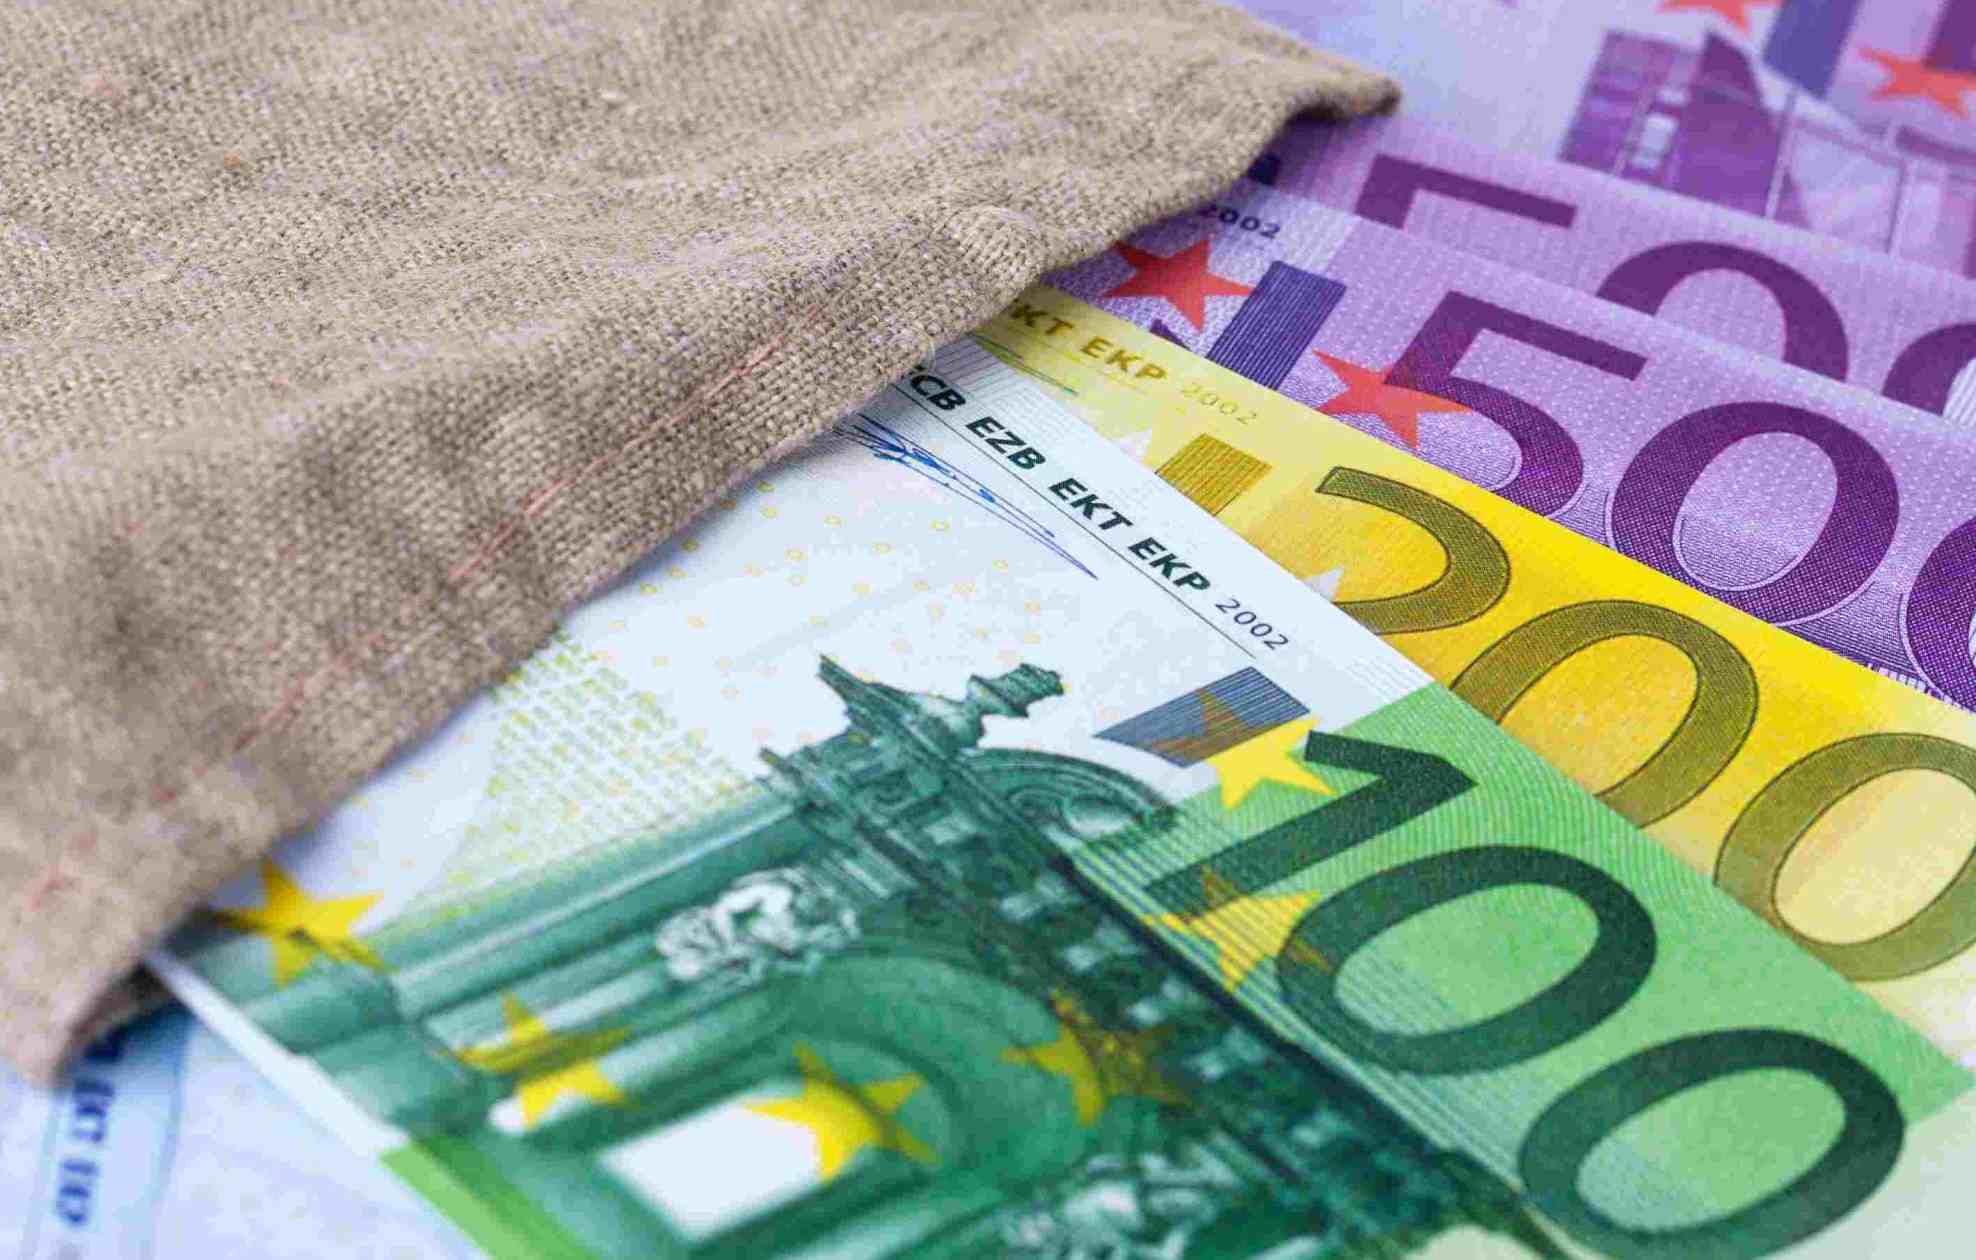 Dettaglio di banconote da 100, 200 e 500 euro appoggiate su una superficie neutra. com'è il tuo approccio al denaro?